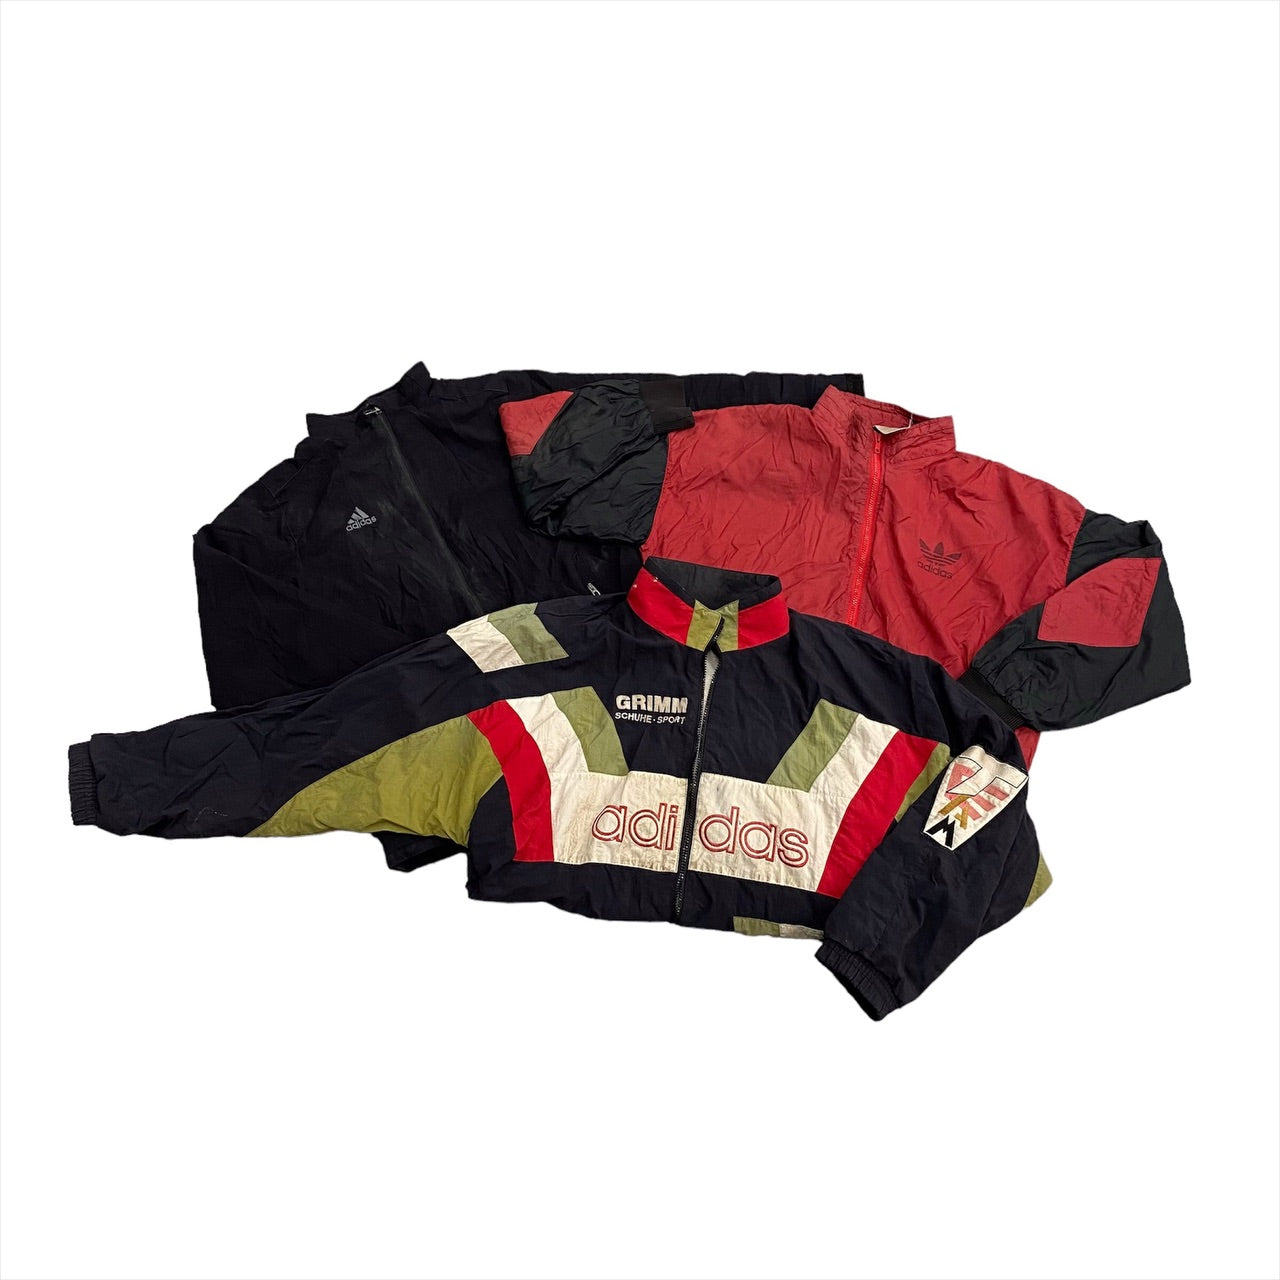 (EOTL) Adidas Branded Jacket Bundle - Grade B 15 pieces